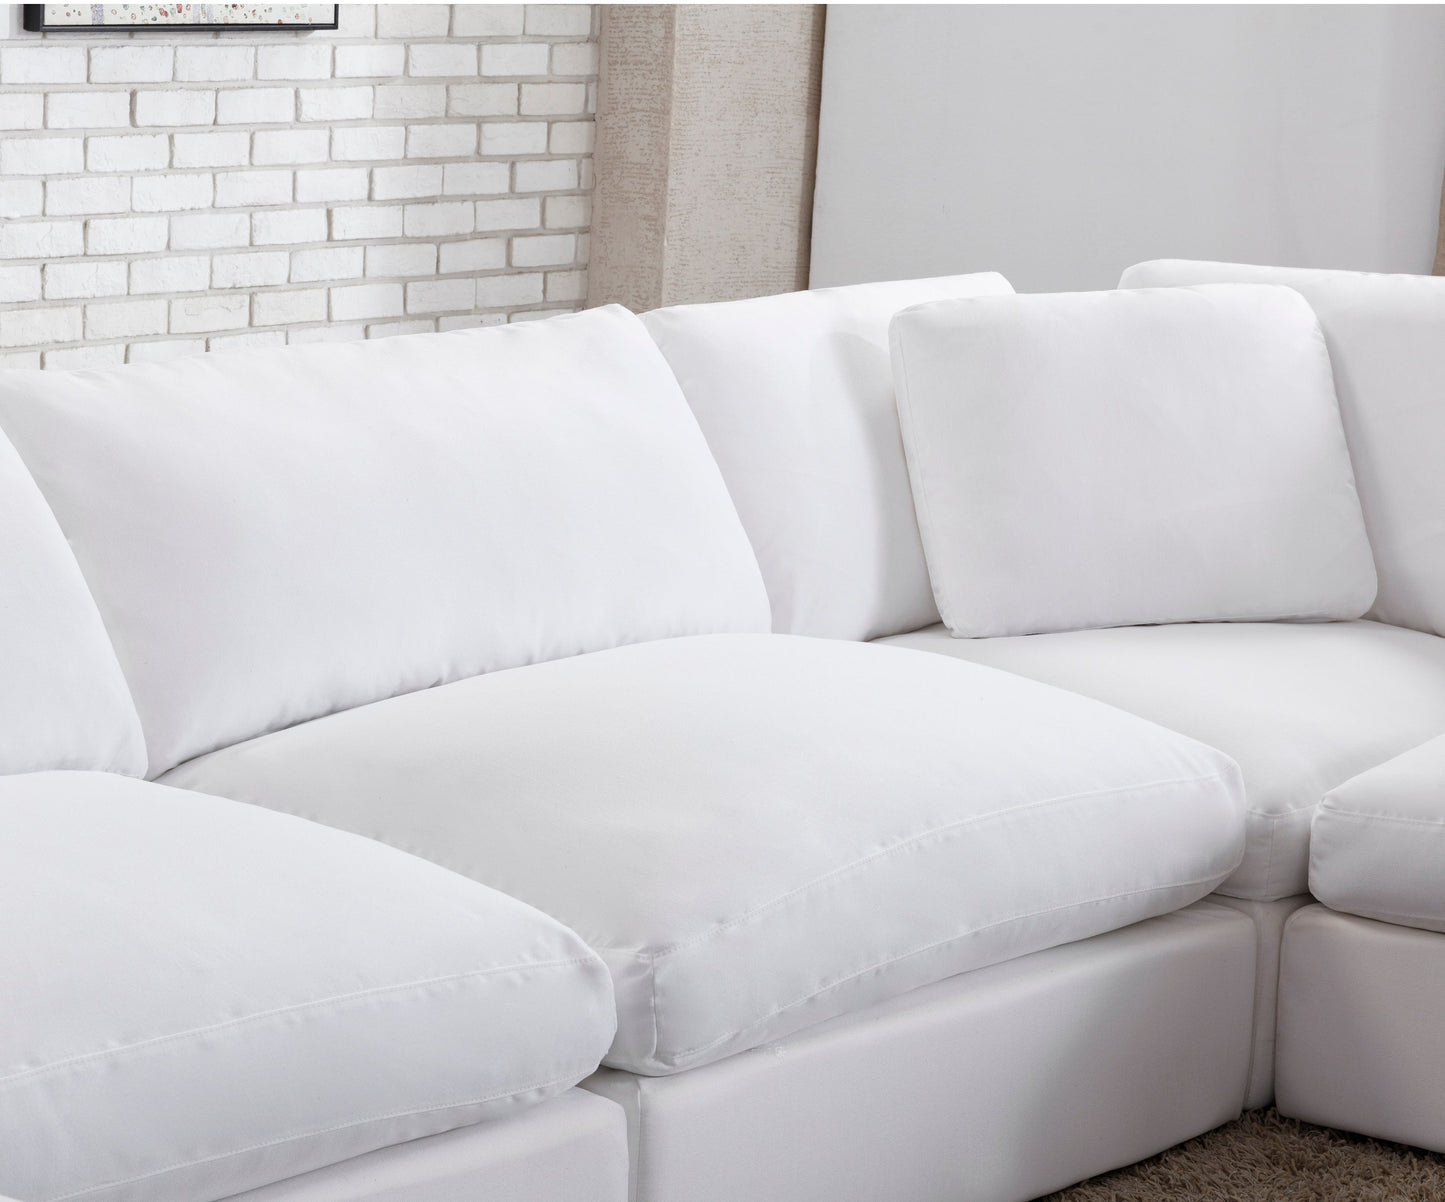 Rivas Contemporary Feather Fill 4-Piece Modular Sectional Sofa, White